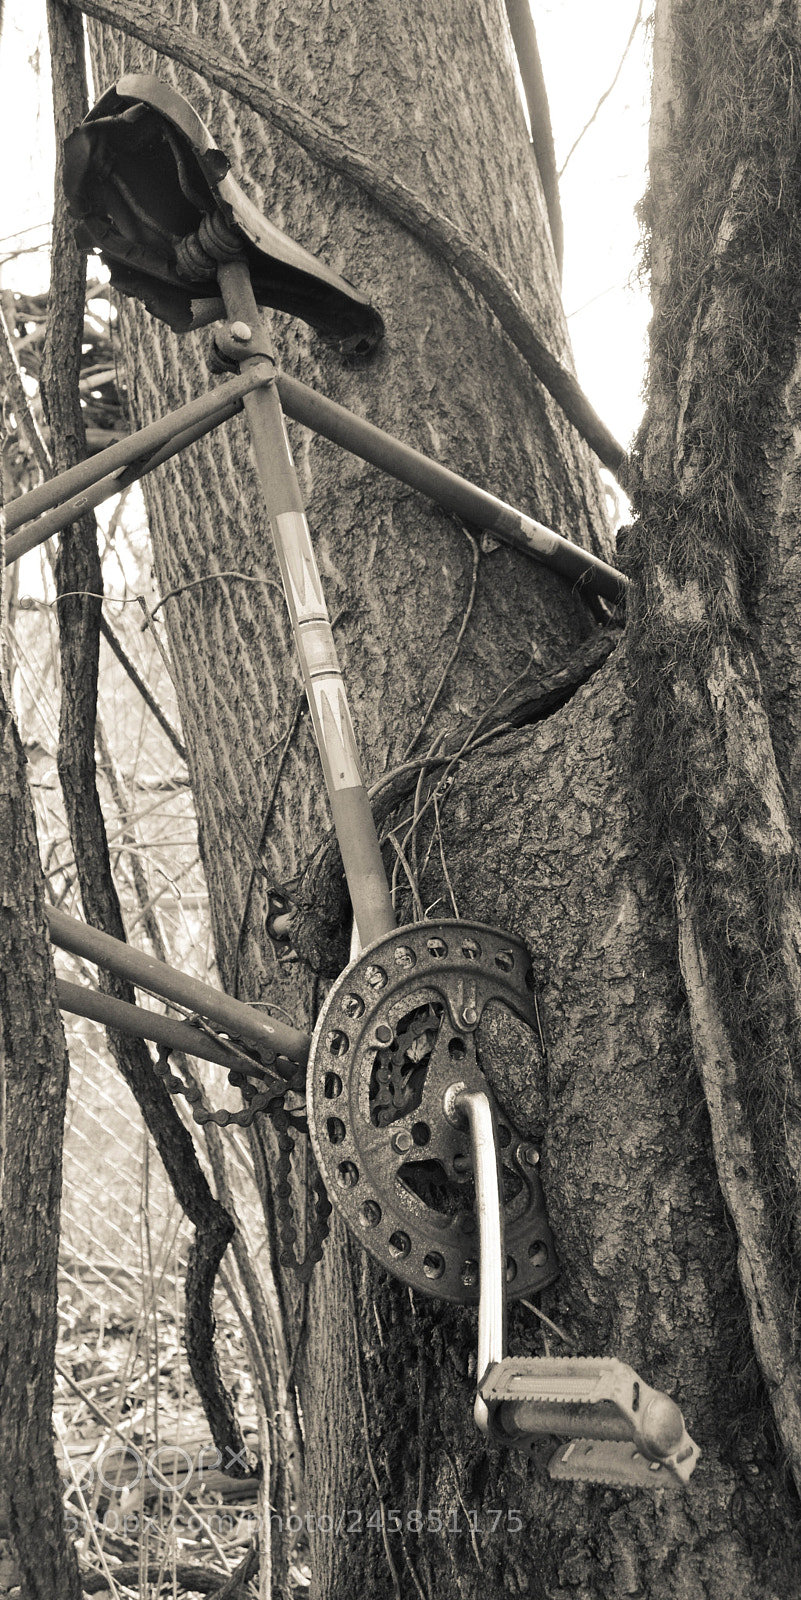 Nikon D3200 sample photo. Bike vs tree photography